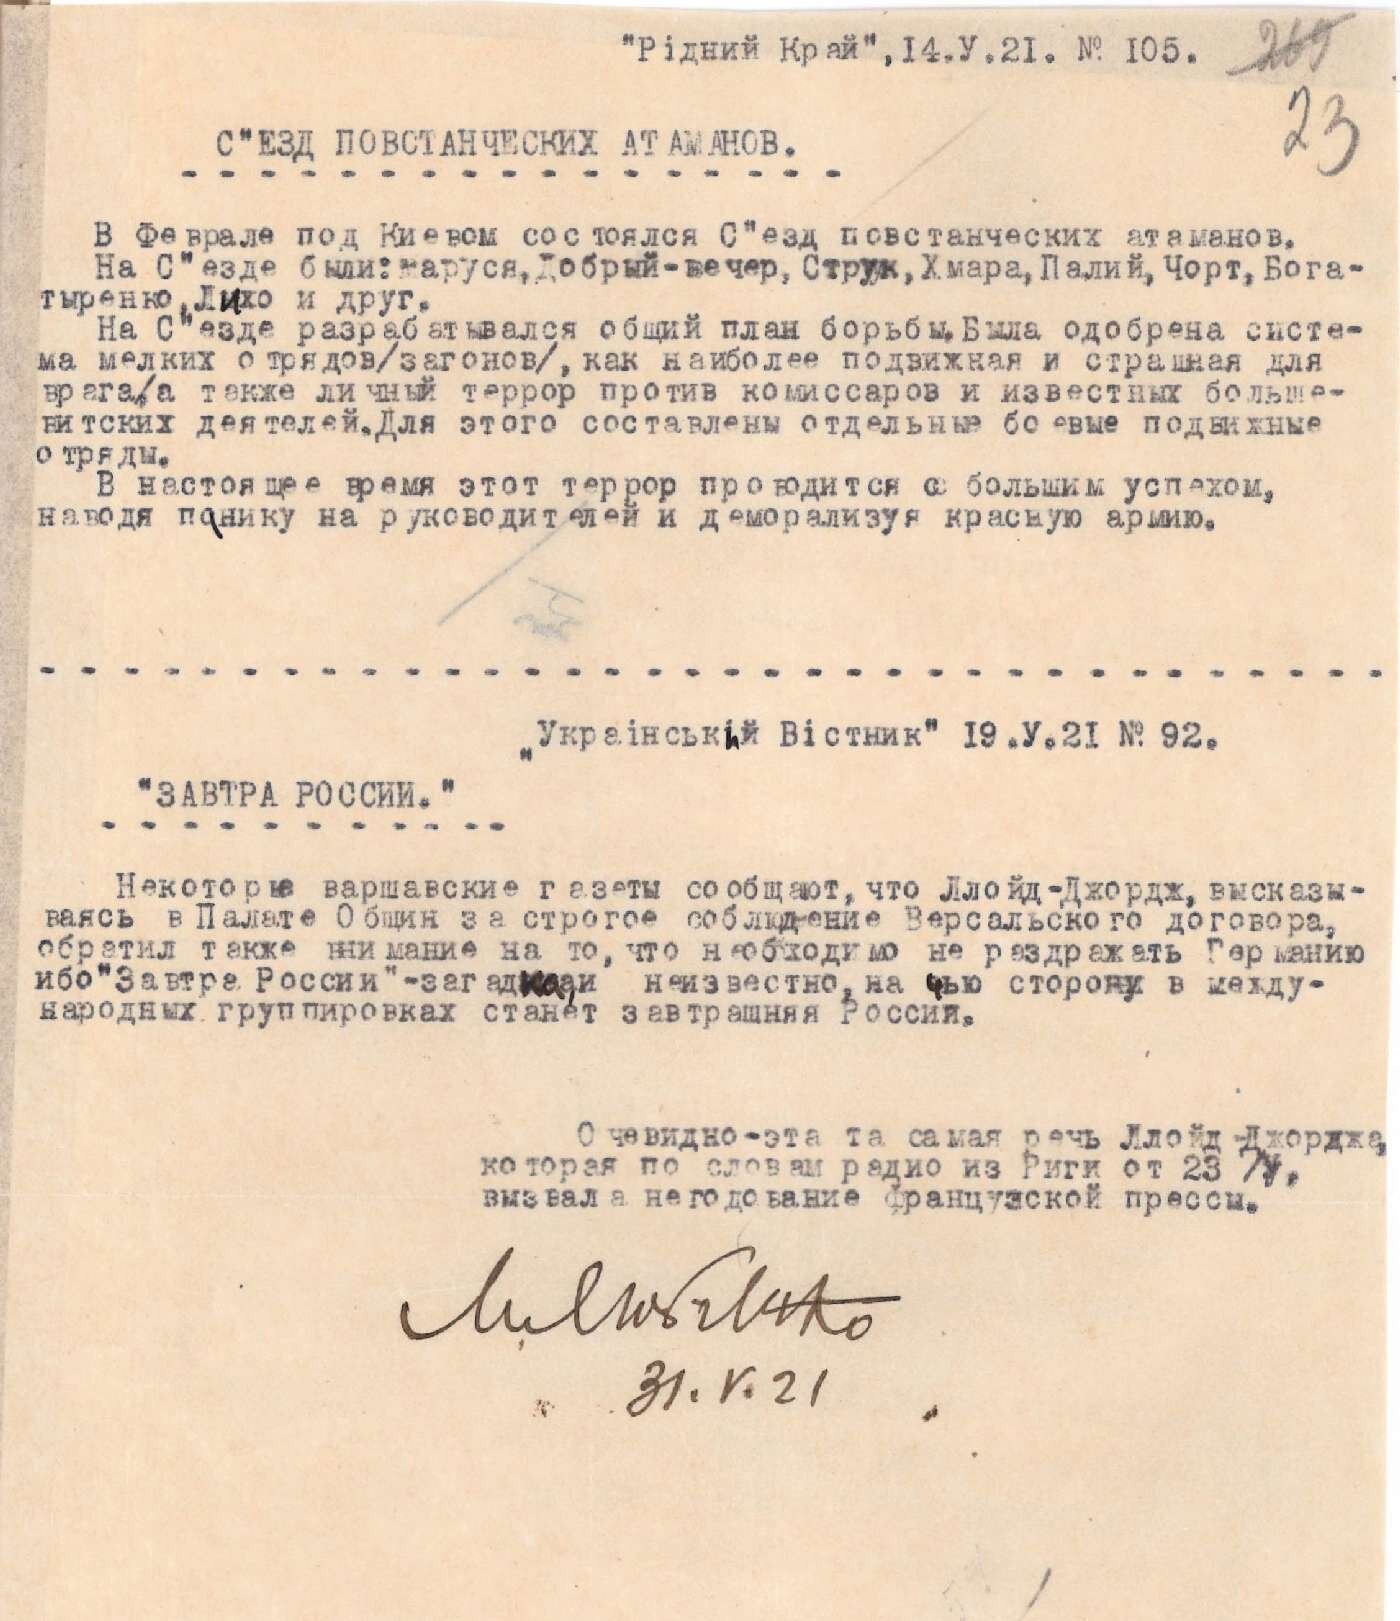 Про з’їзд повстанських отаманів, який відбувся у лютому 1921 р. під Києвом. З часопису «Рідний край» від 14 травня 1921 р.